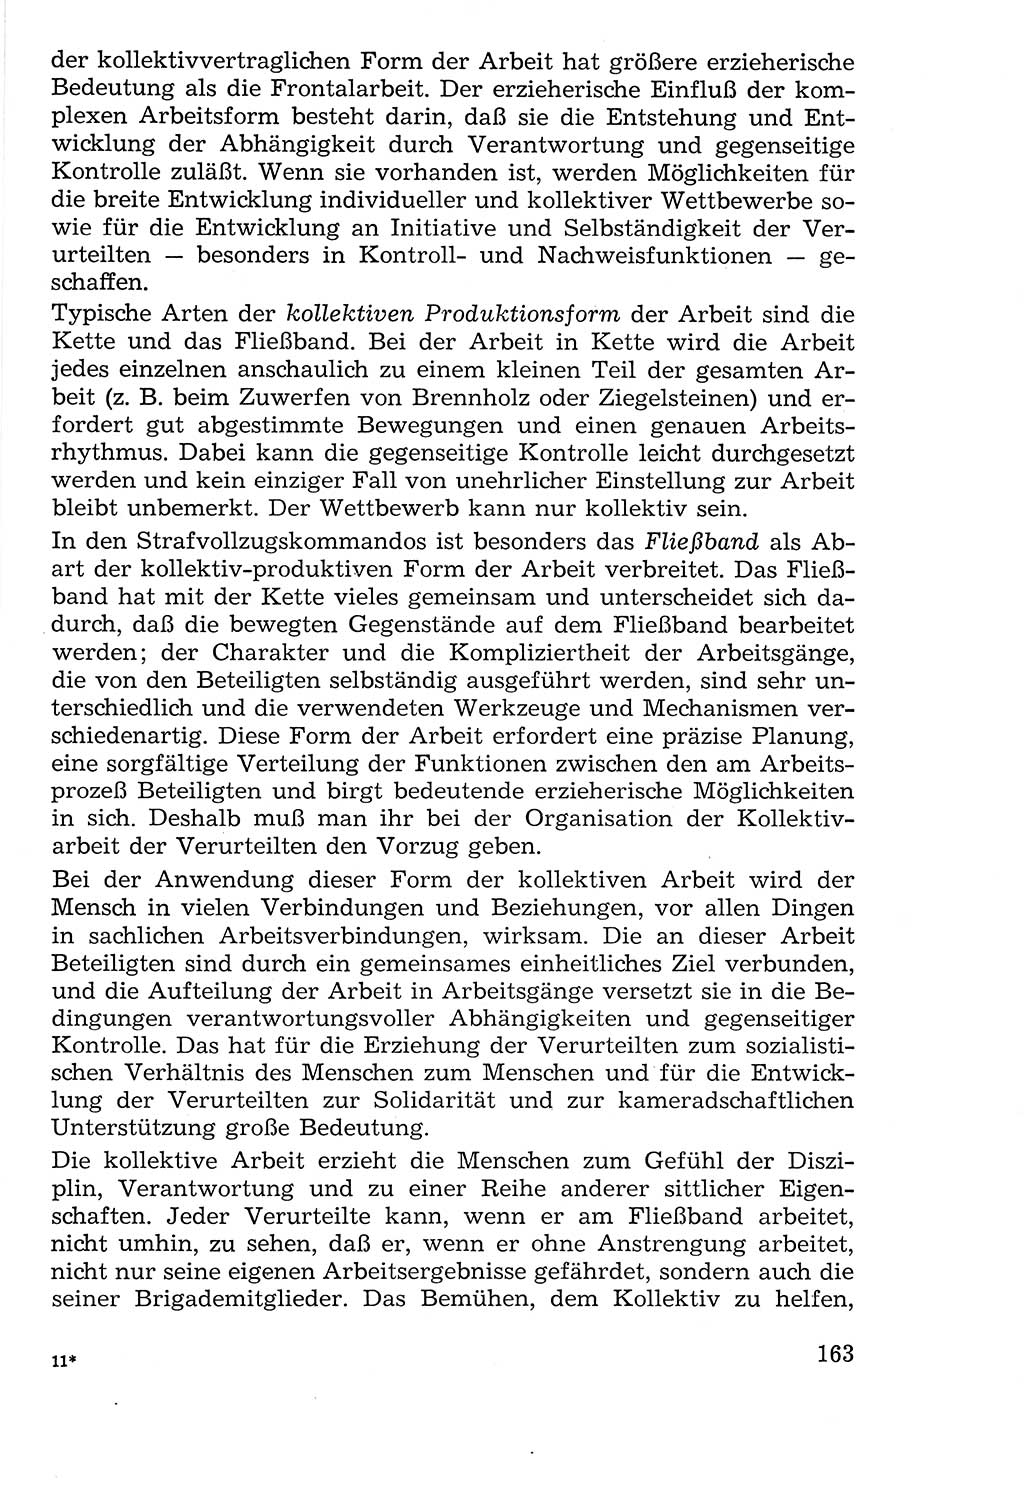 Lehrbuch der Strafvollzugspädagogik [Deutsche Demokratische Republik (DDR)] 1969, Seite 163 (Lb. SV-Pd. DDR 1969, S. 163)